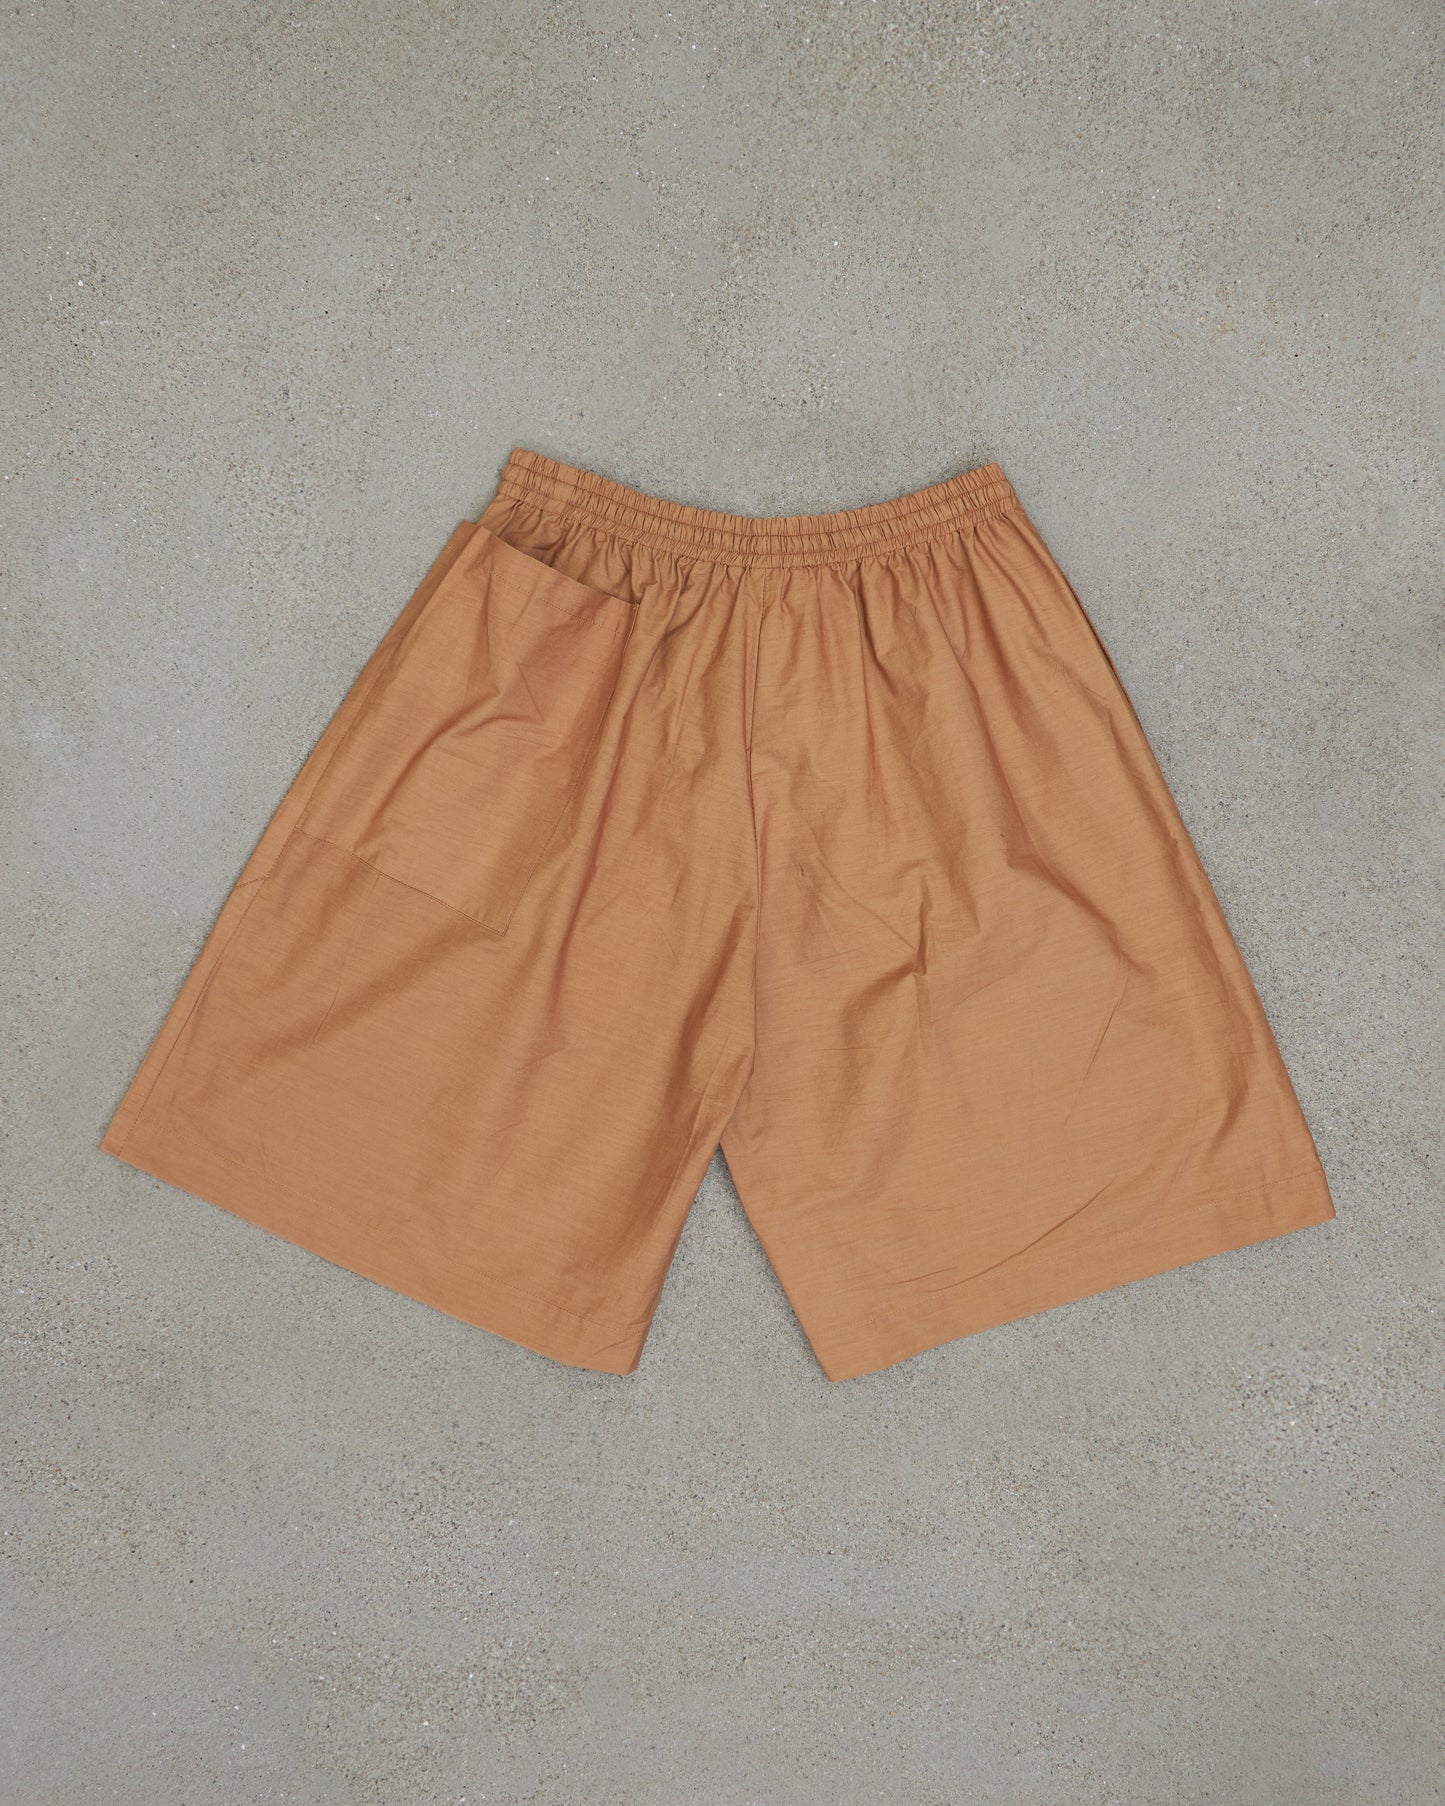 Hori Hori shorts - Tussock